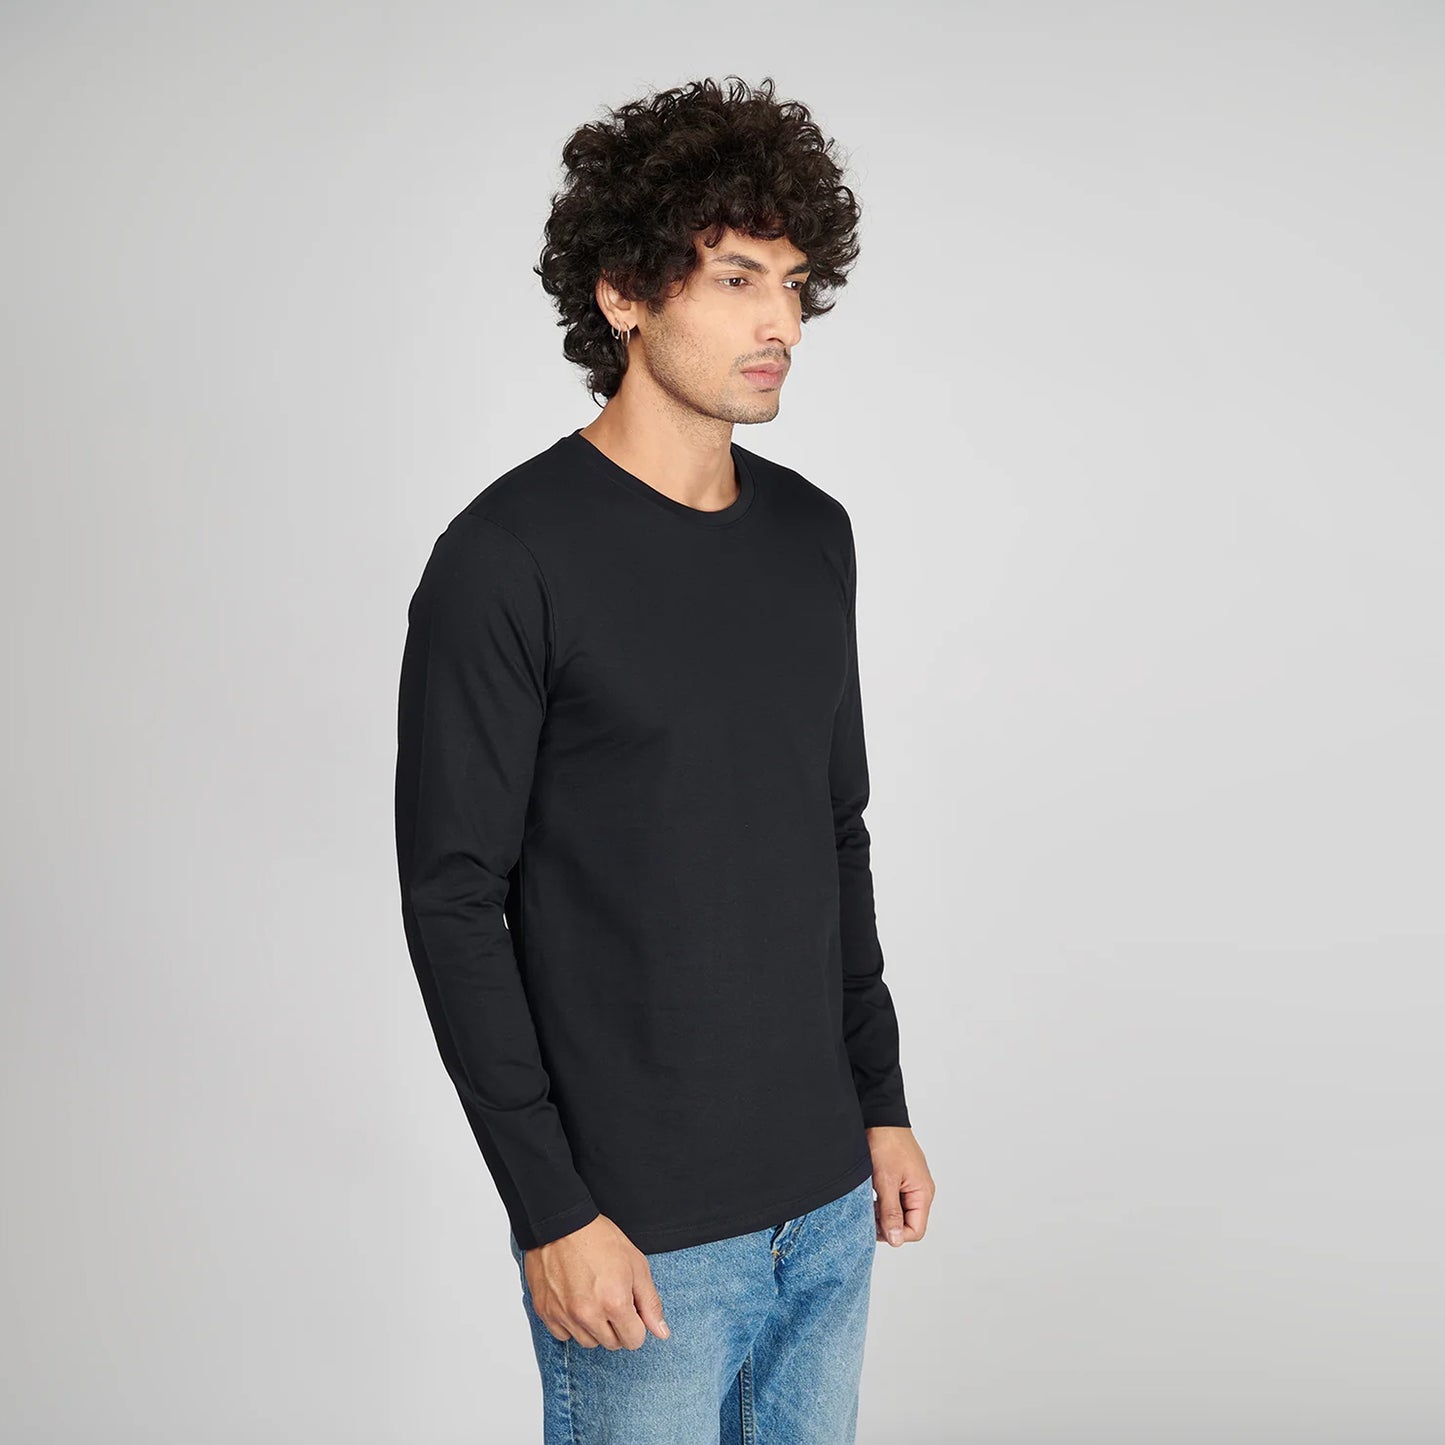 Basic Black Full Sleeves T-Shirt